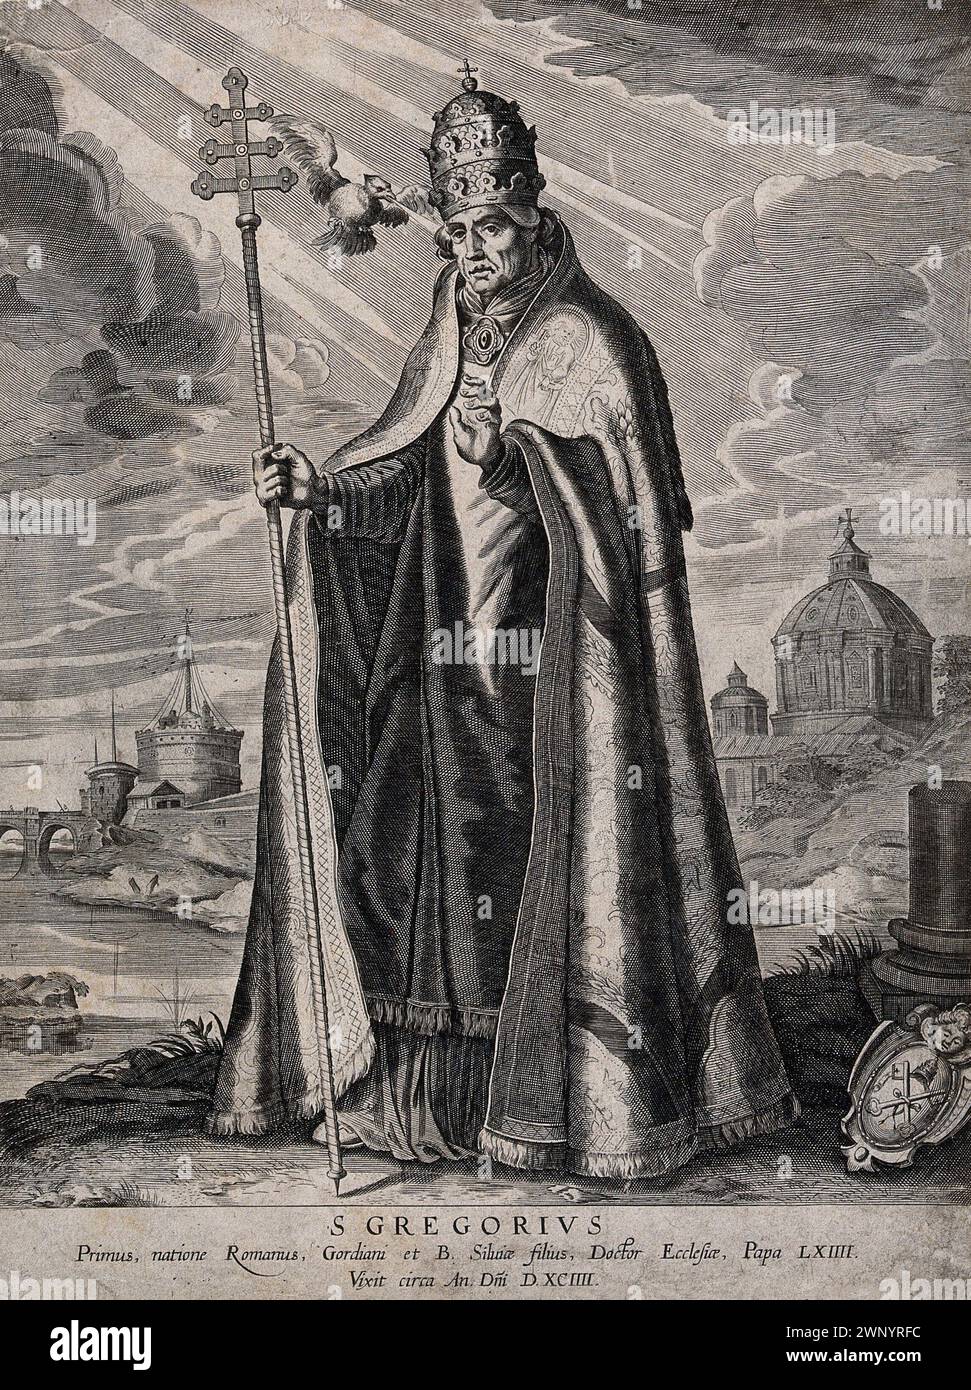 Un'incisione del XVII secolo di Papa Gregorio i (noto anche come San Gregorio Magno) che fu pontefice dall'AD590 all'AD604. Era il 64° papa. Fu lui che introdusse il canto semplice noto come canto gregoriano. Foto Stock